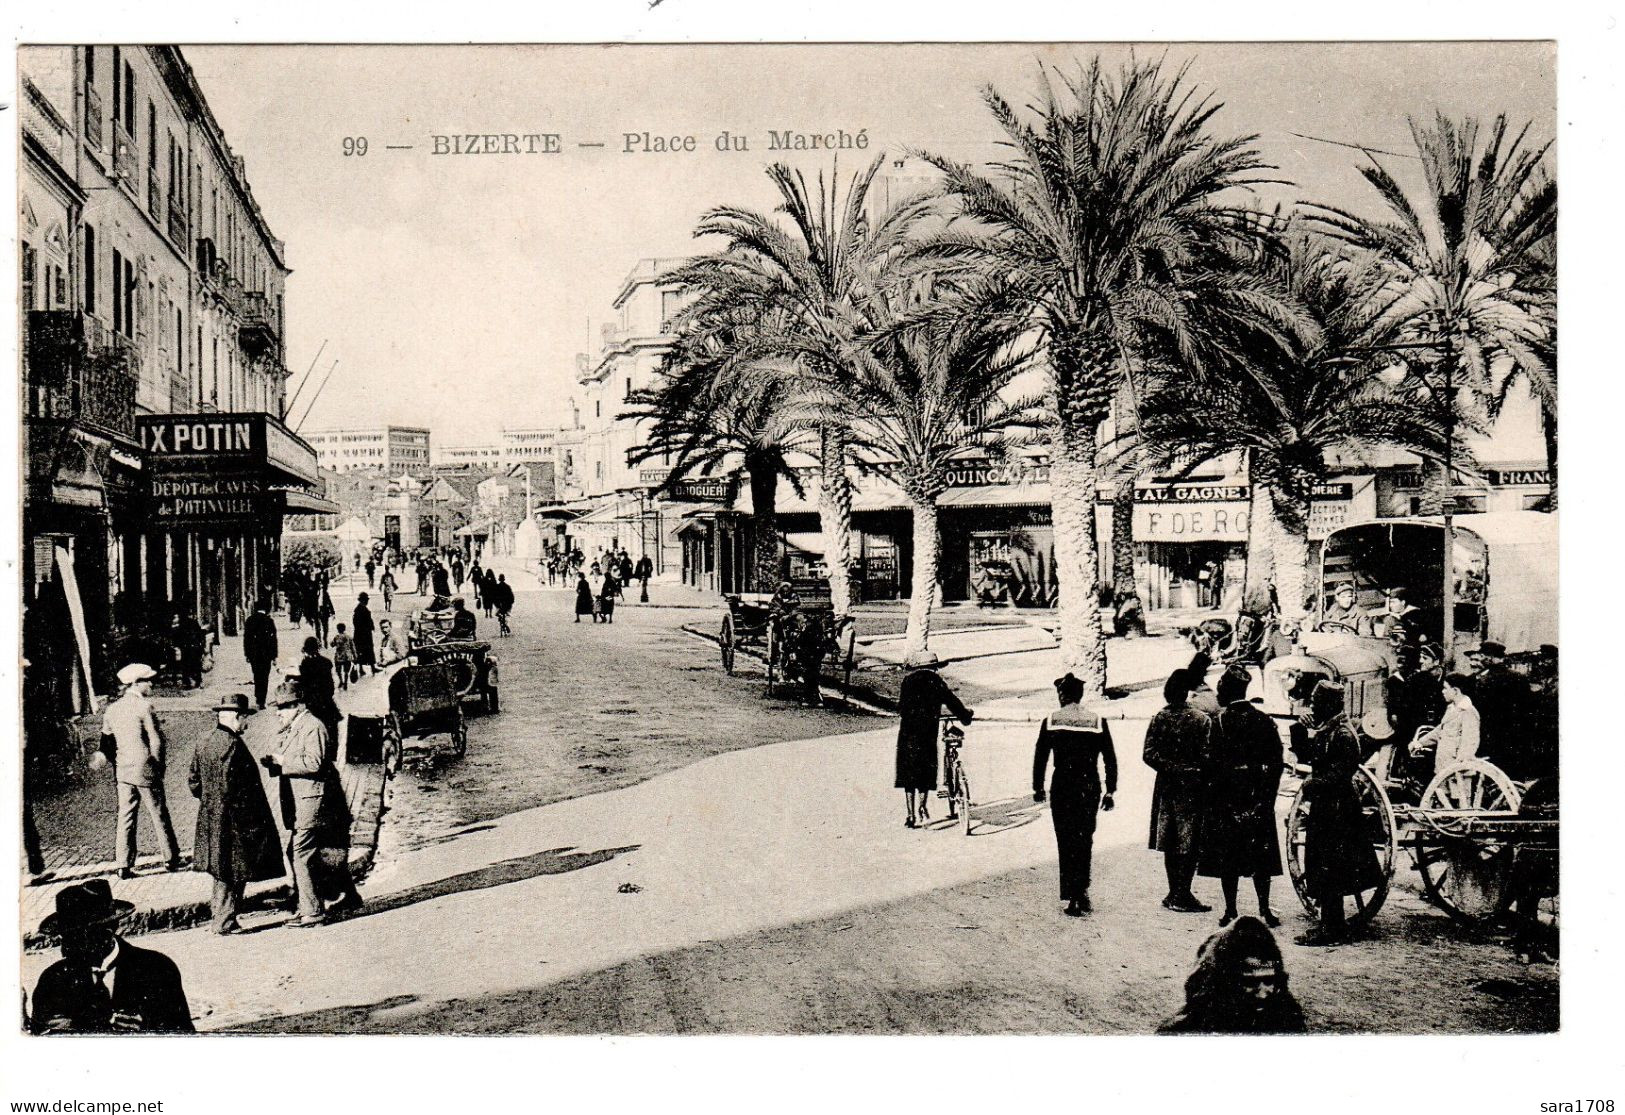 BIZERTE, Place Du Marché. - Tunisia